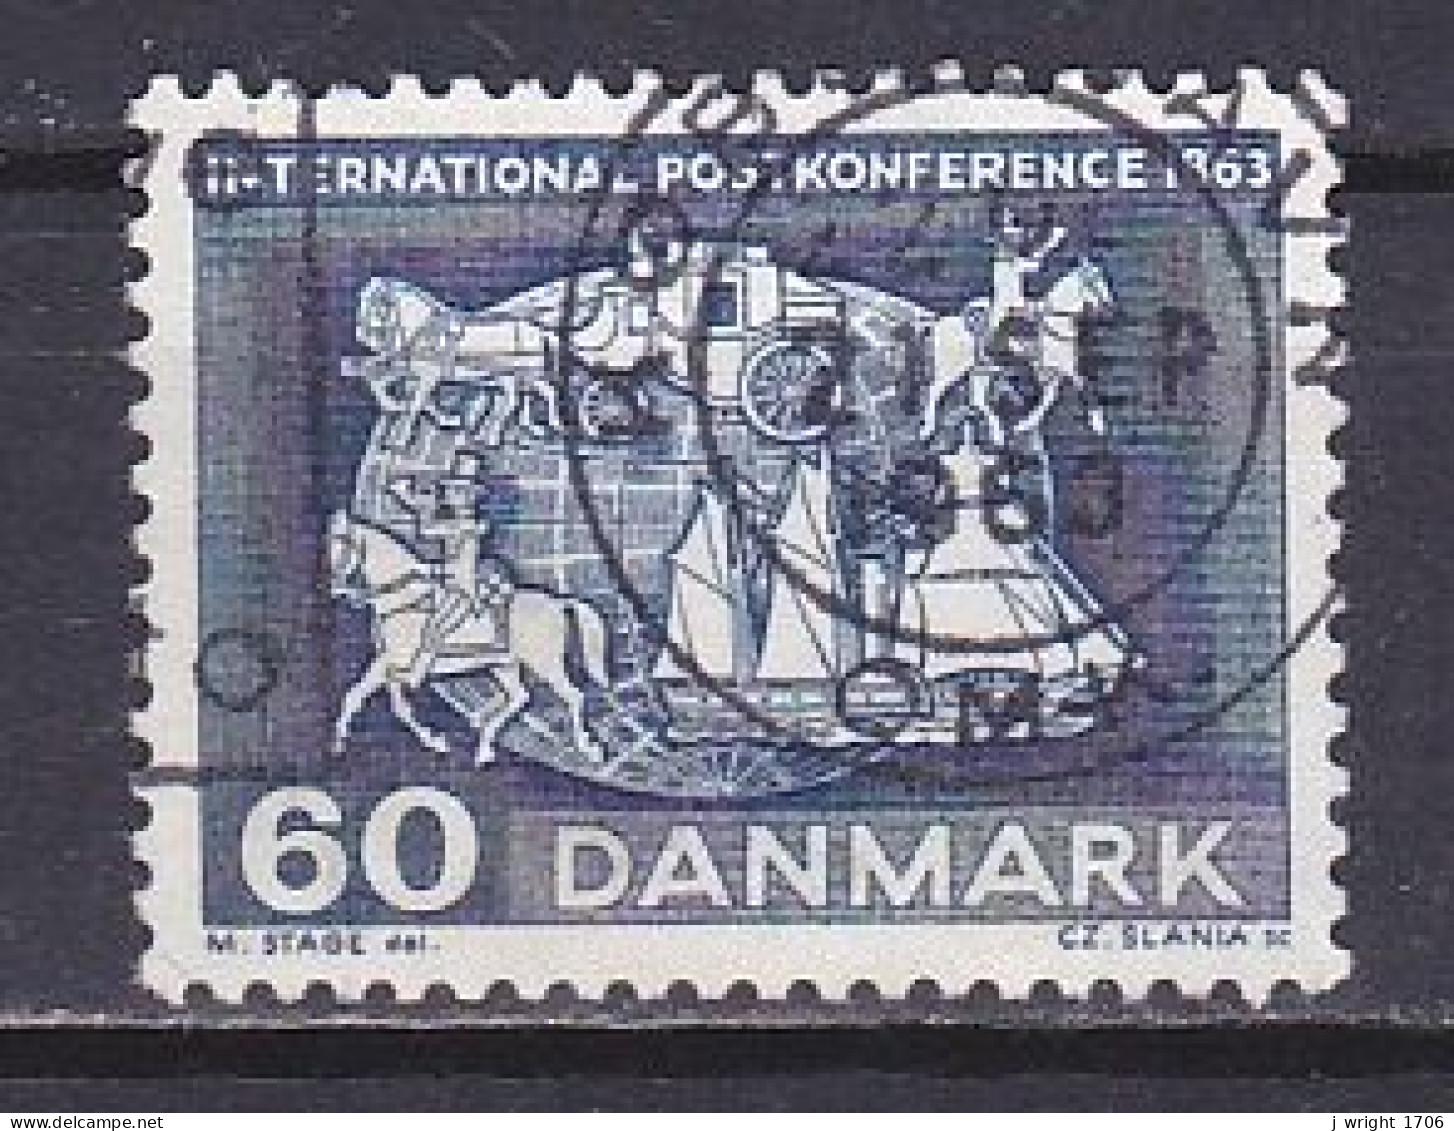 Denmark, 1963, Paris Postal Conf. Centenary, 60ø, USED - Gebruikt